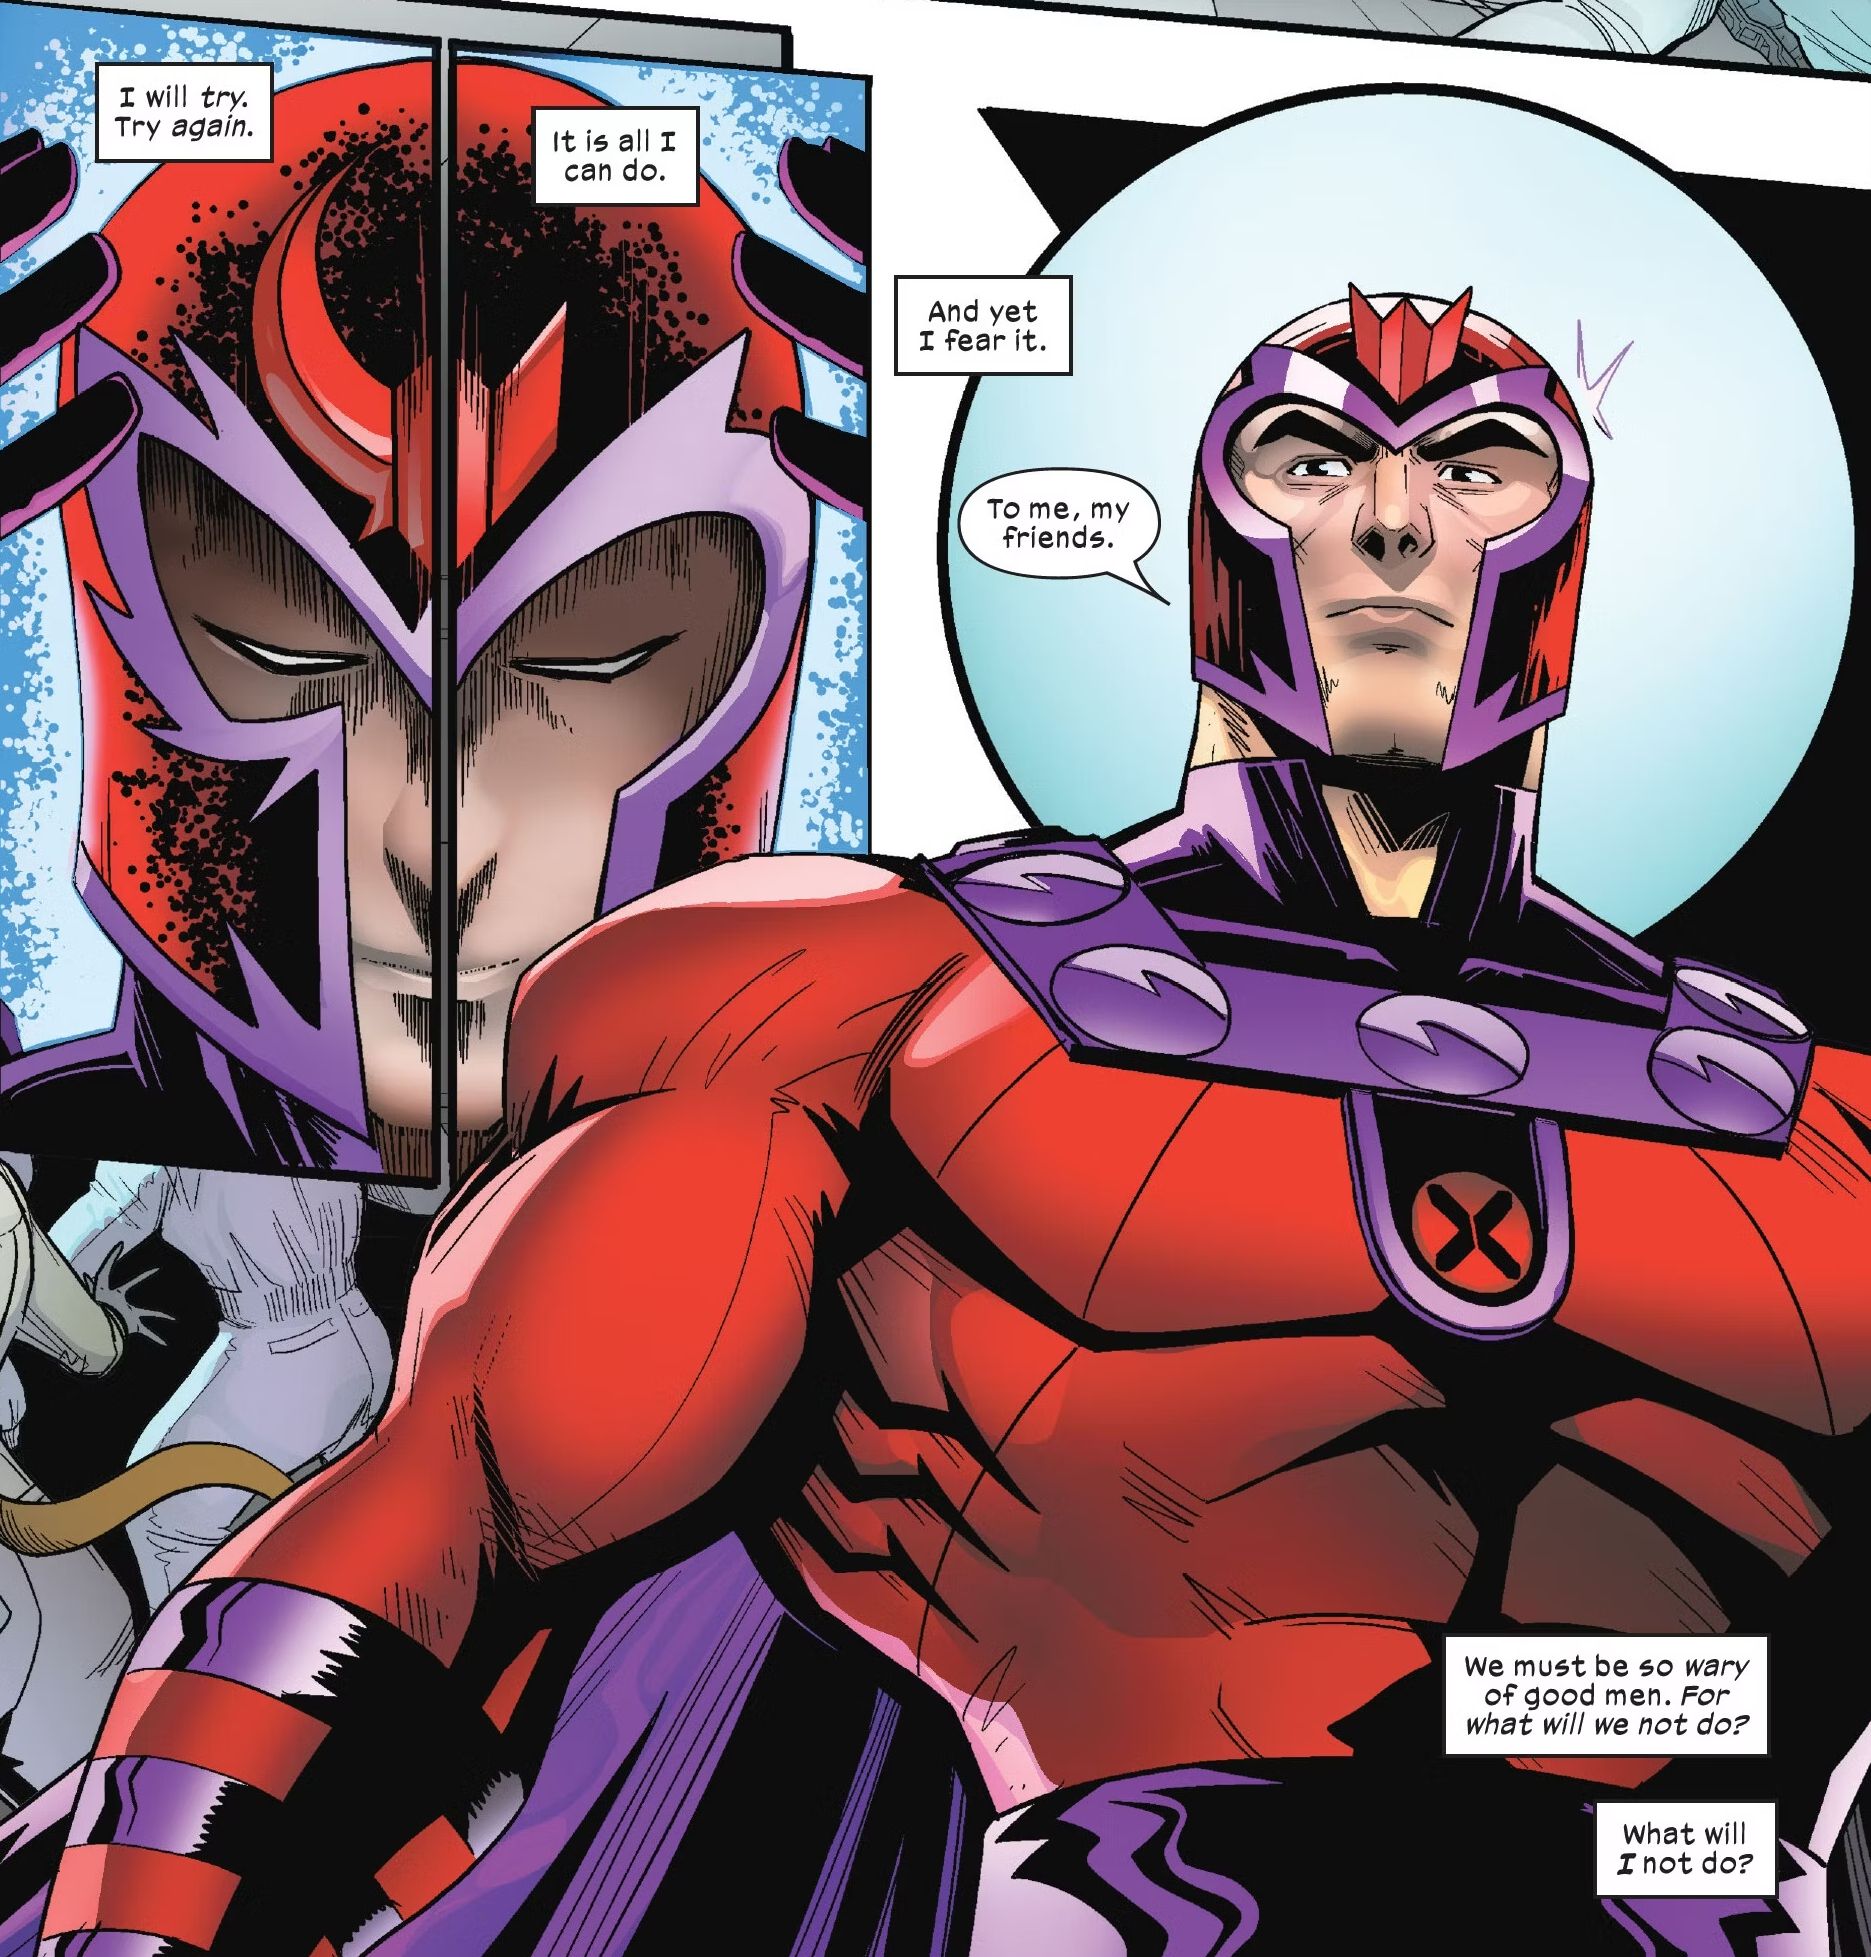 Ressurreição de Magneto #4, Magneto diz 'para mim, meus amigos' enquanto assume seu papel heróico